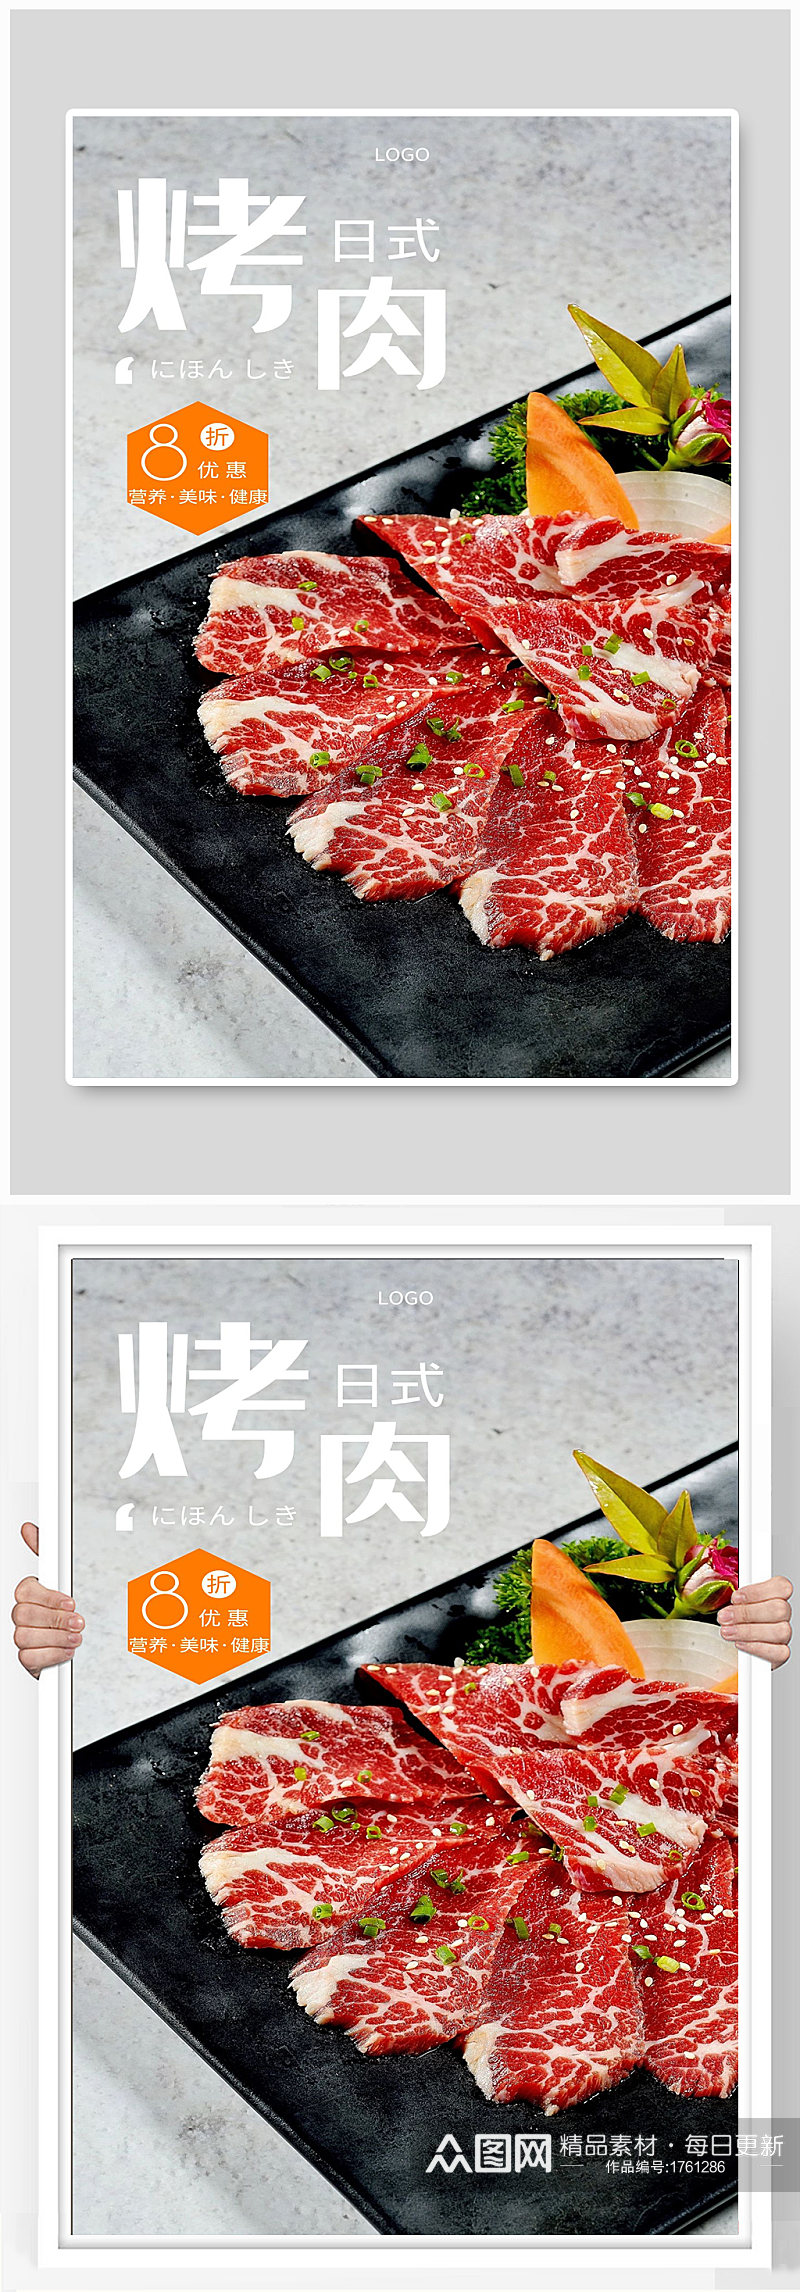 烤肉宣传海报设计素材